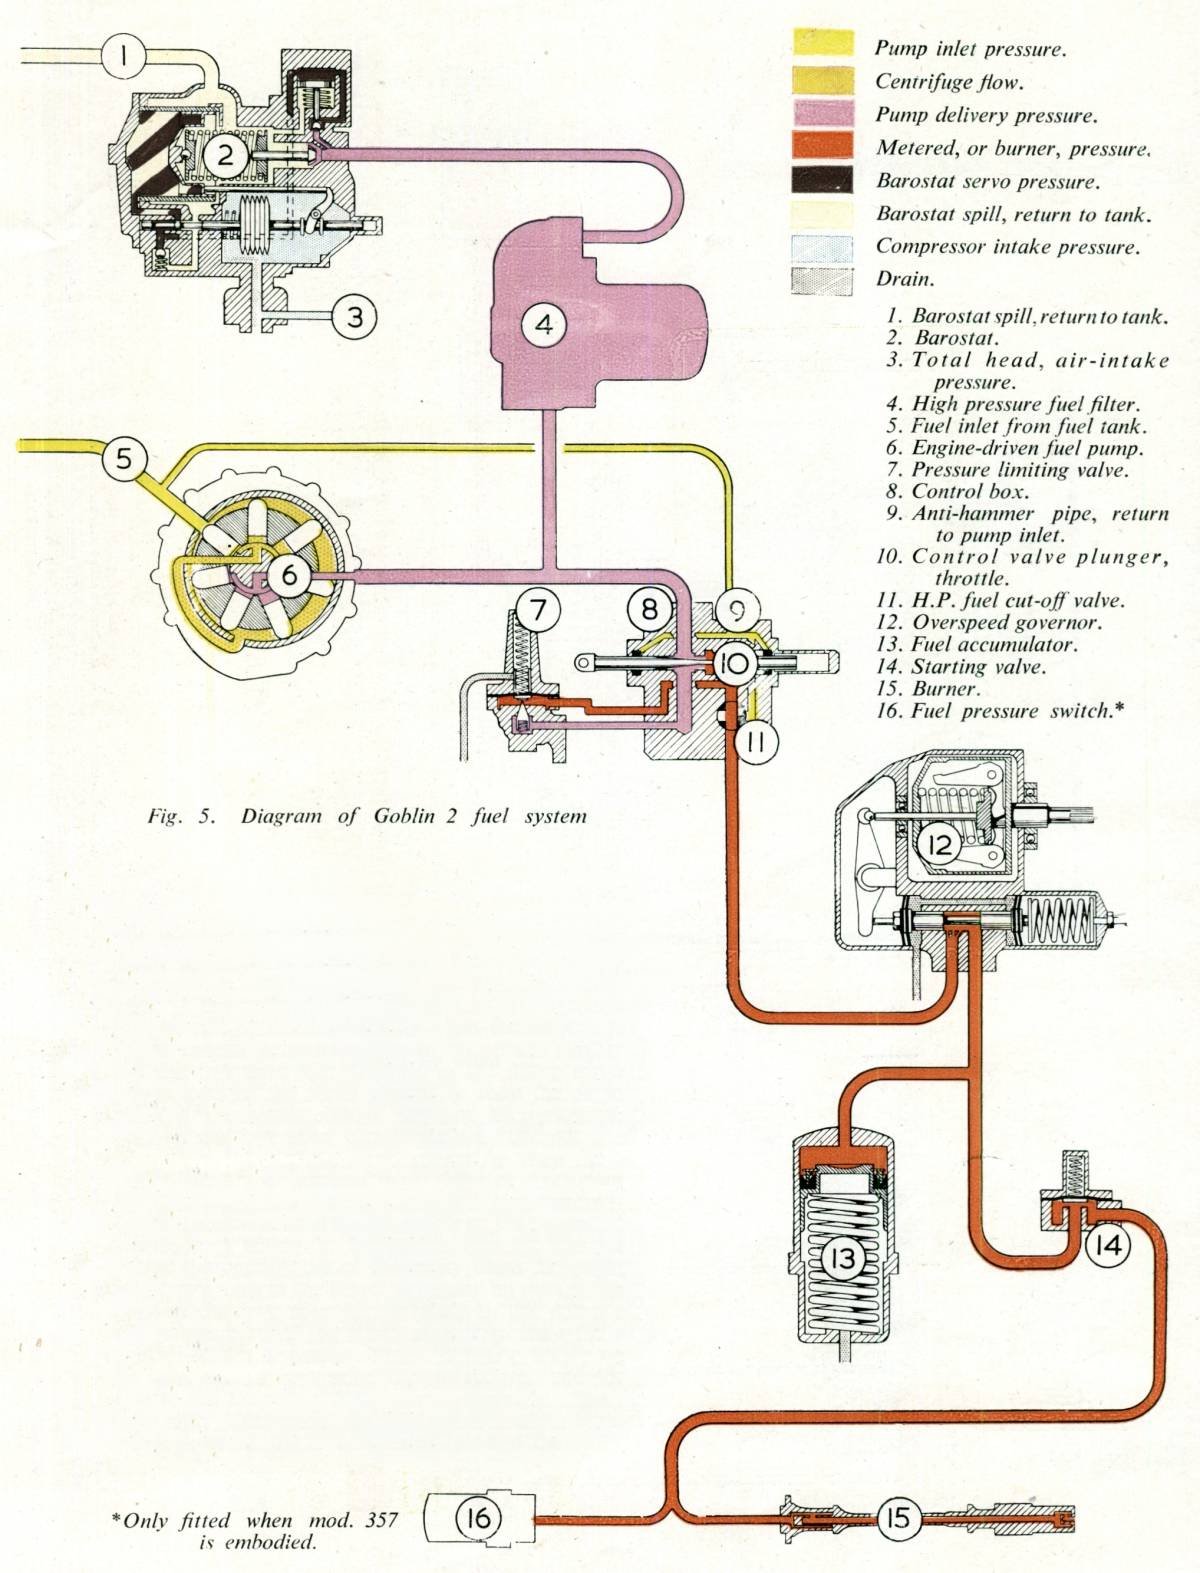 fuelsystemdiagram.jpg